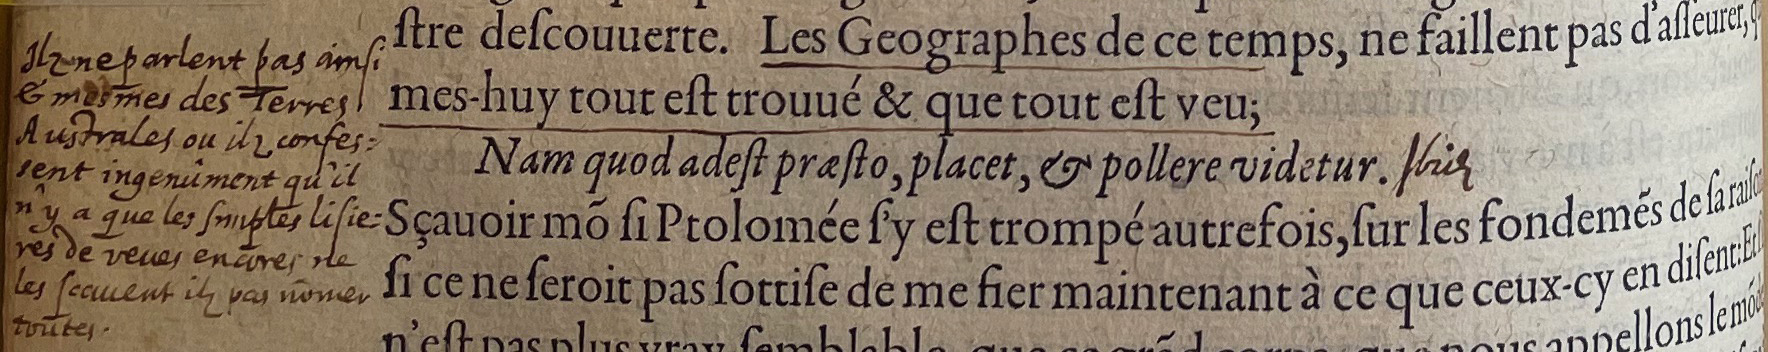 12.a. - p. 376, Livre II. Note de Laval. Les Essais, 1595. Exemplaire Laval.